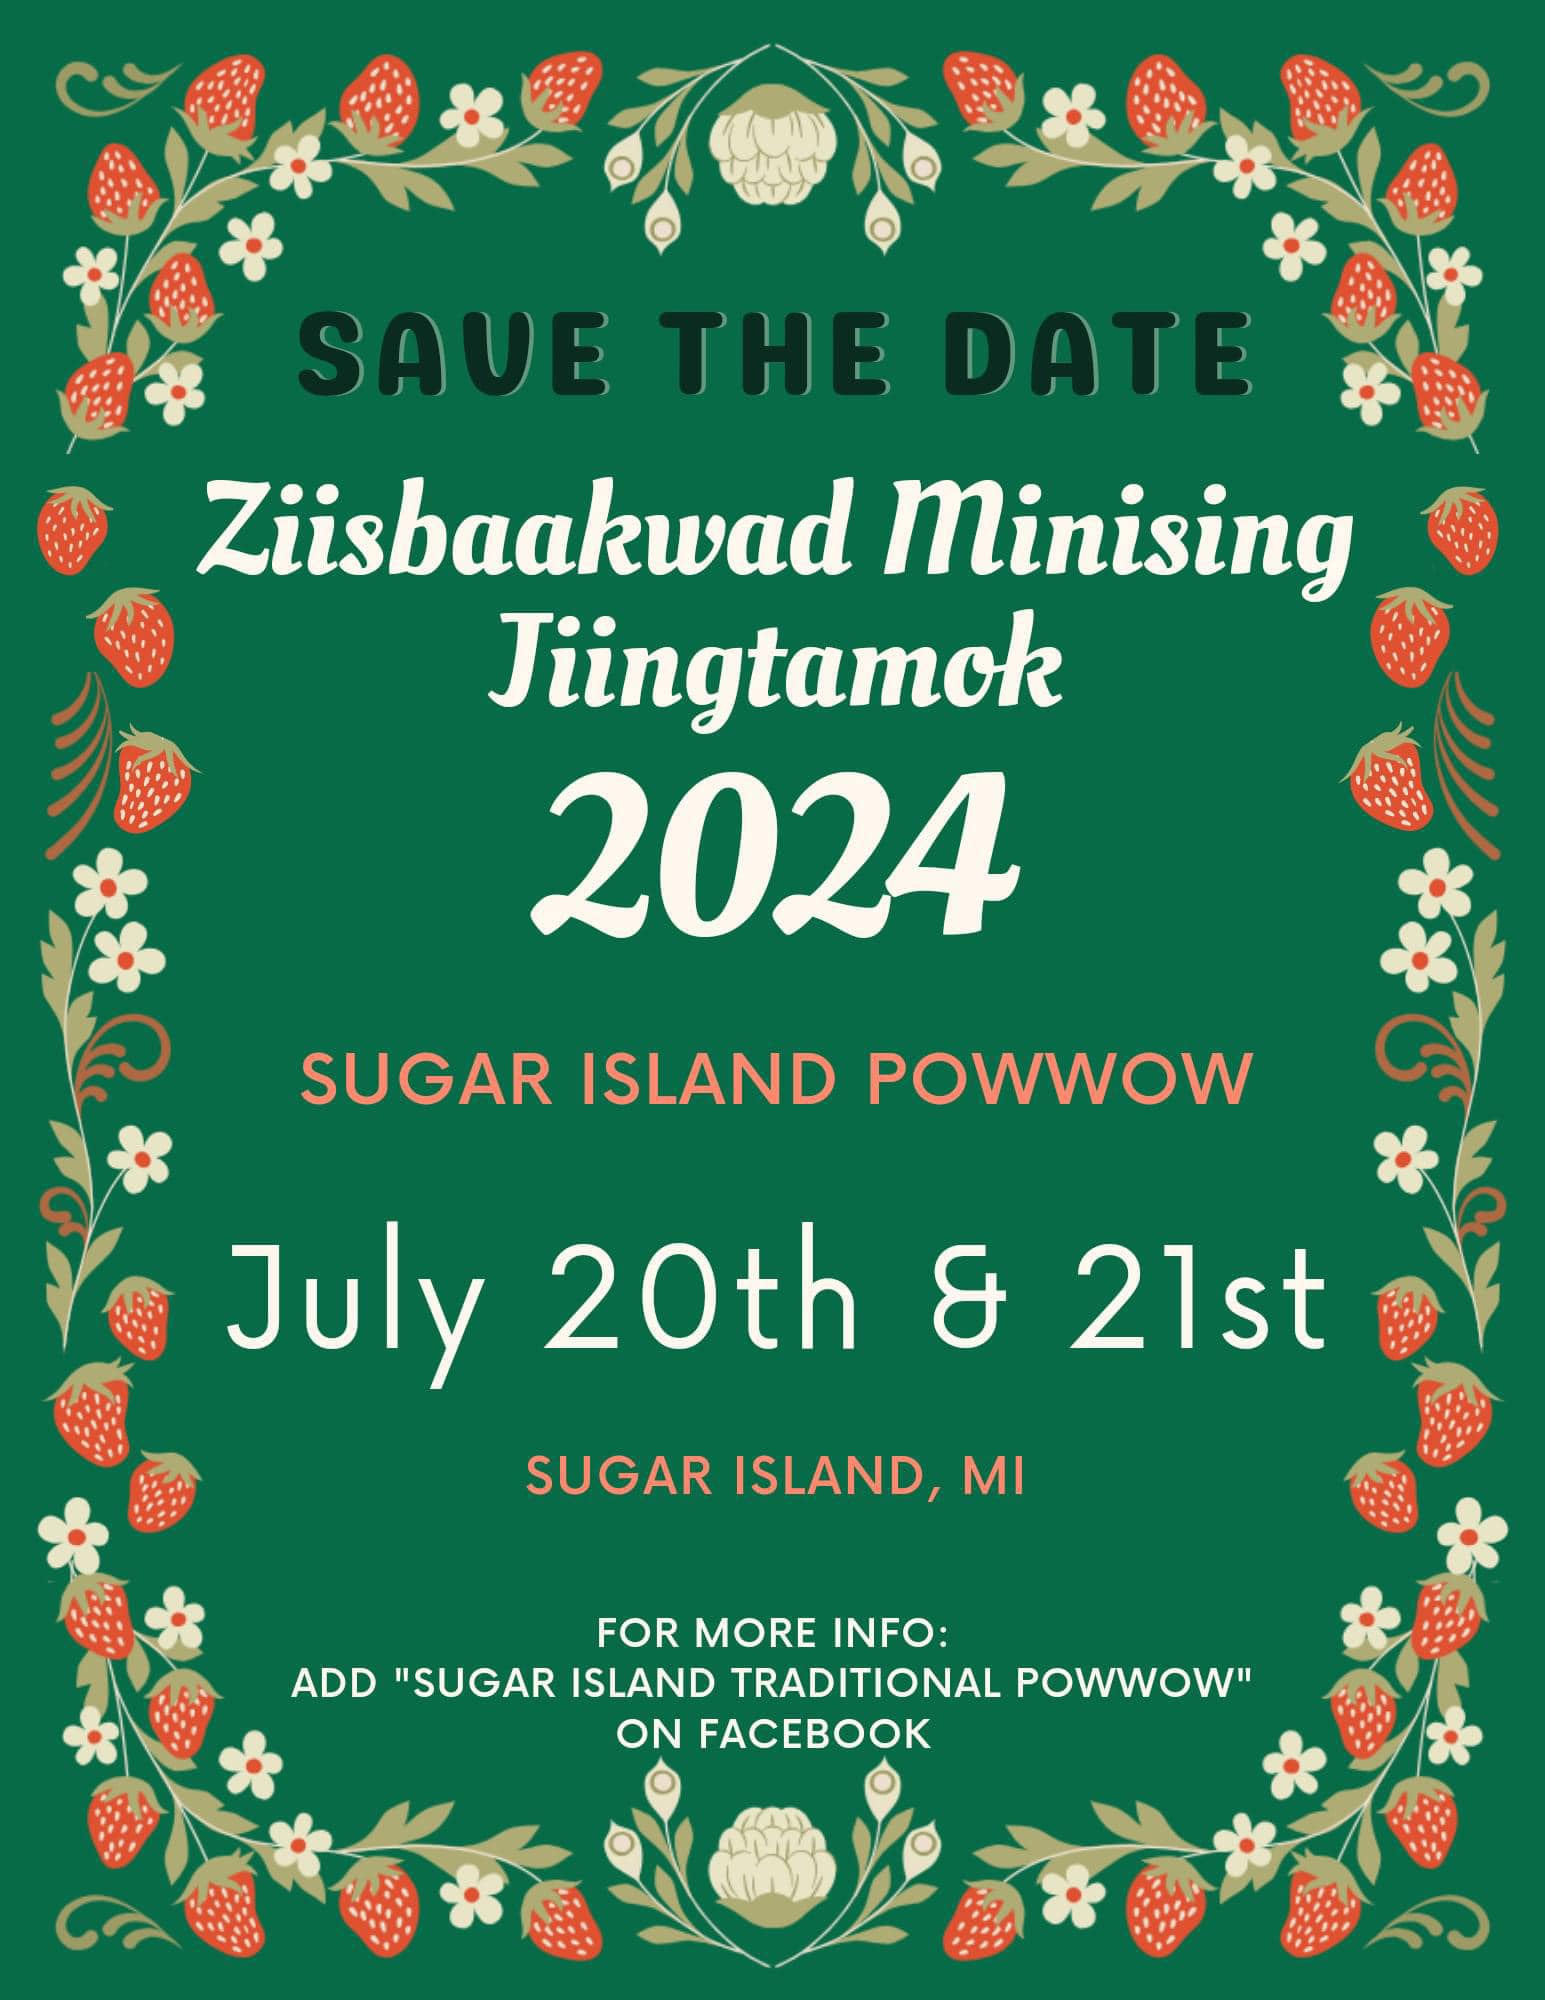 Sugar Island Powwow 2024